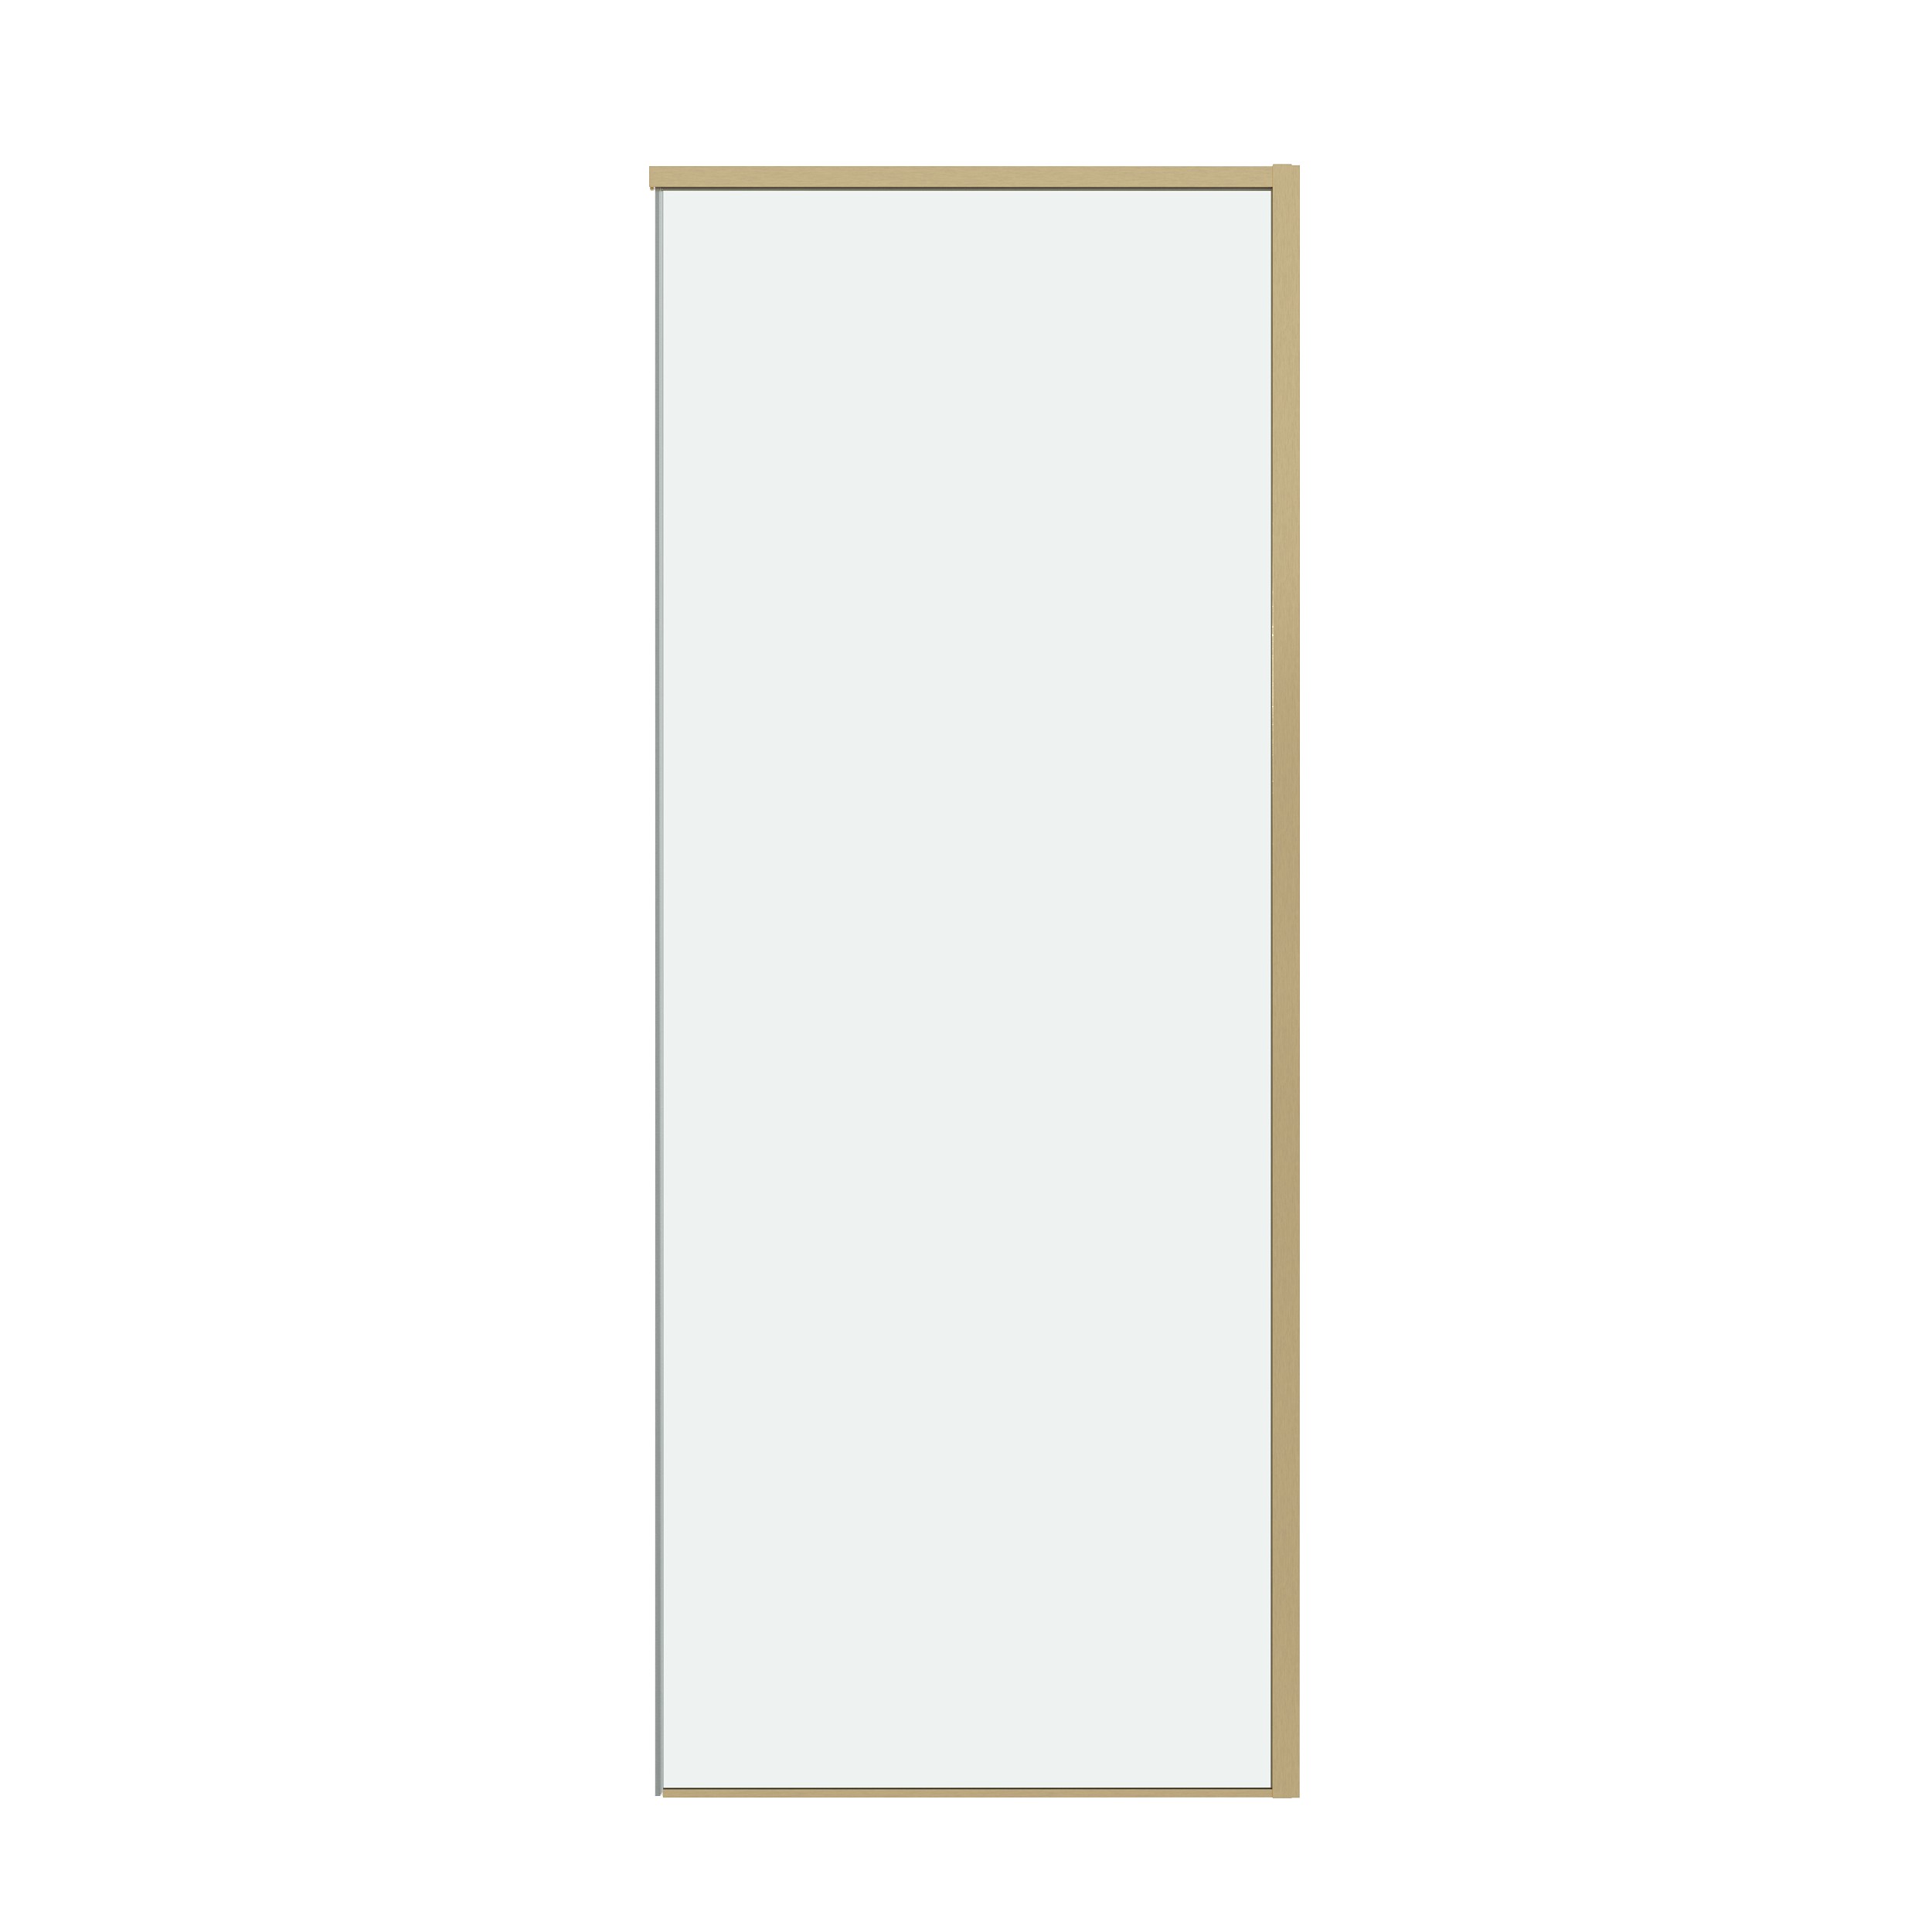 Боковая стенка Grossman Galaxy 90x195 200.K33.01.90.32.00 стекло прозрачное, профиль золото